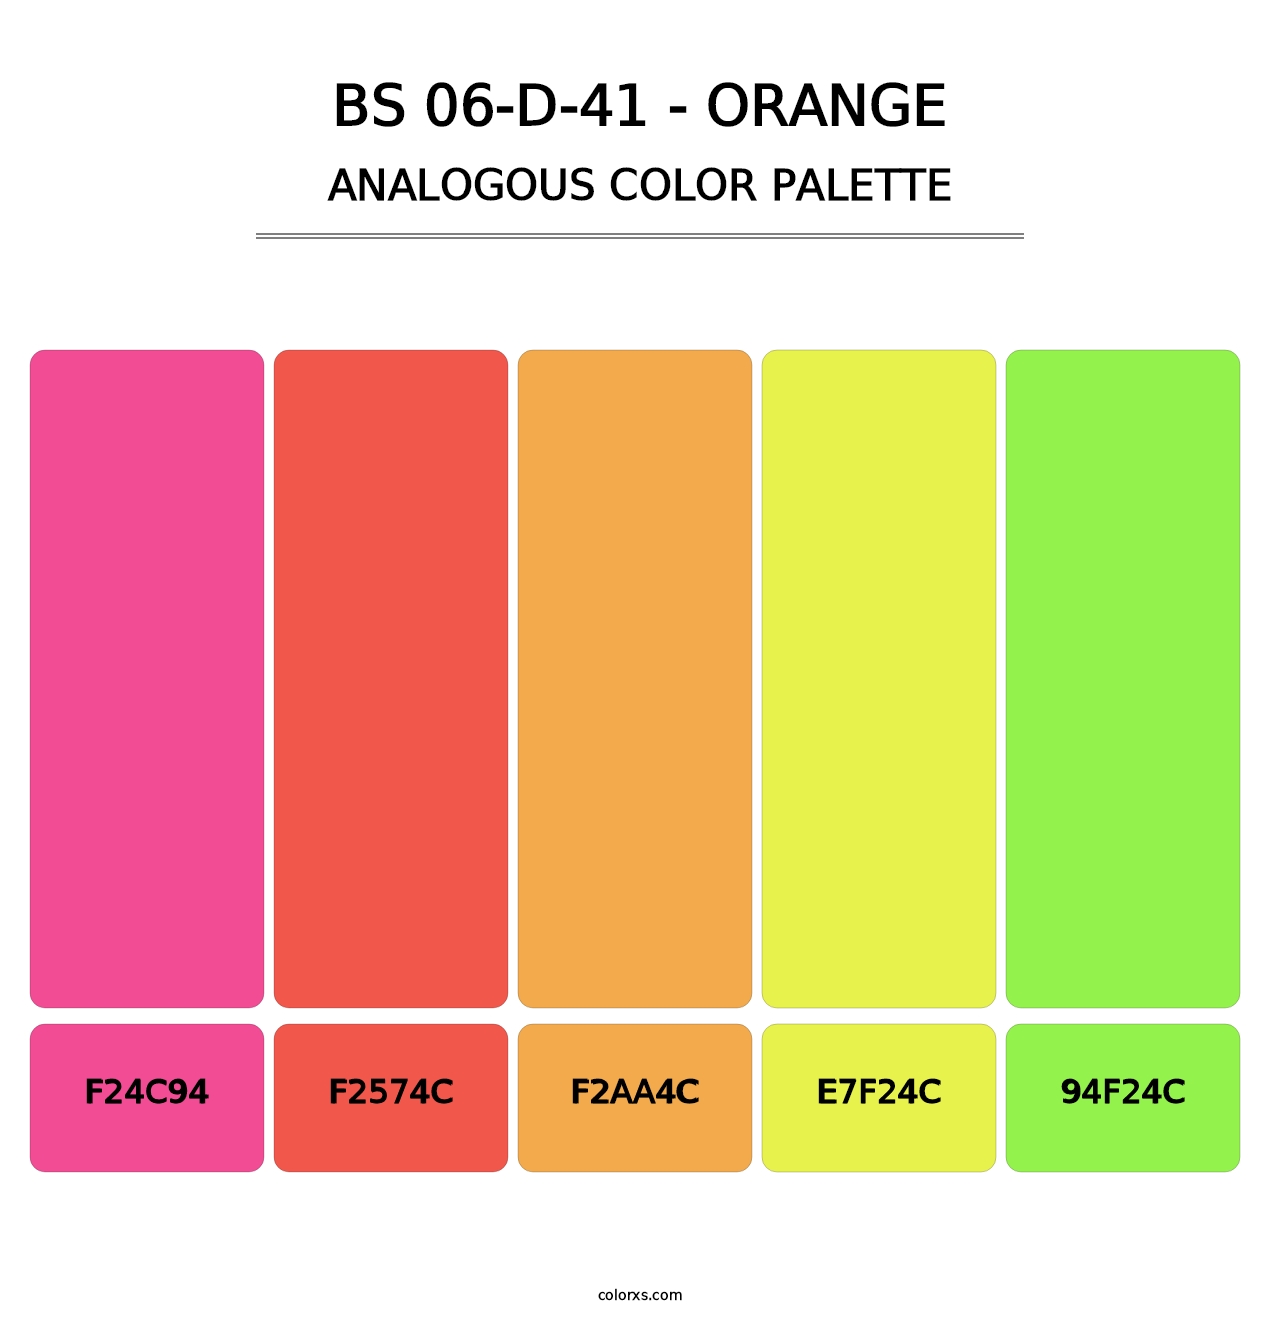 BS 06-D-41 - Orange - Analogous Color Palette